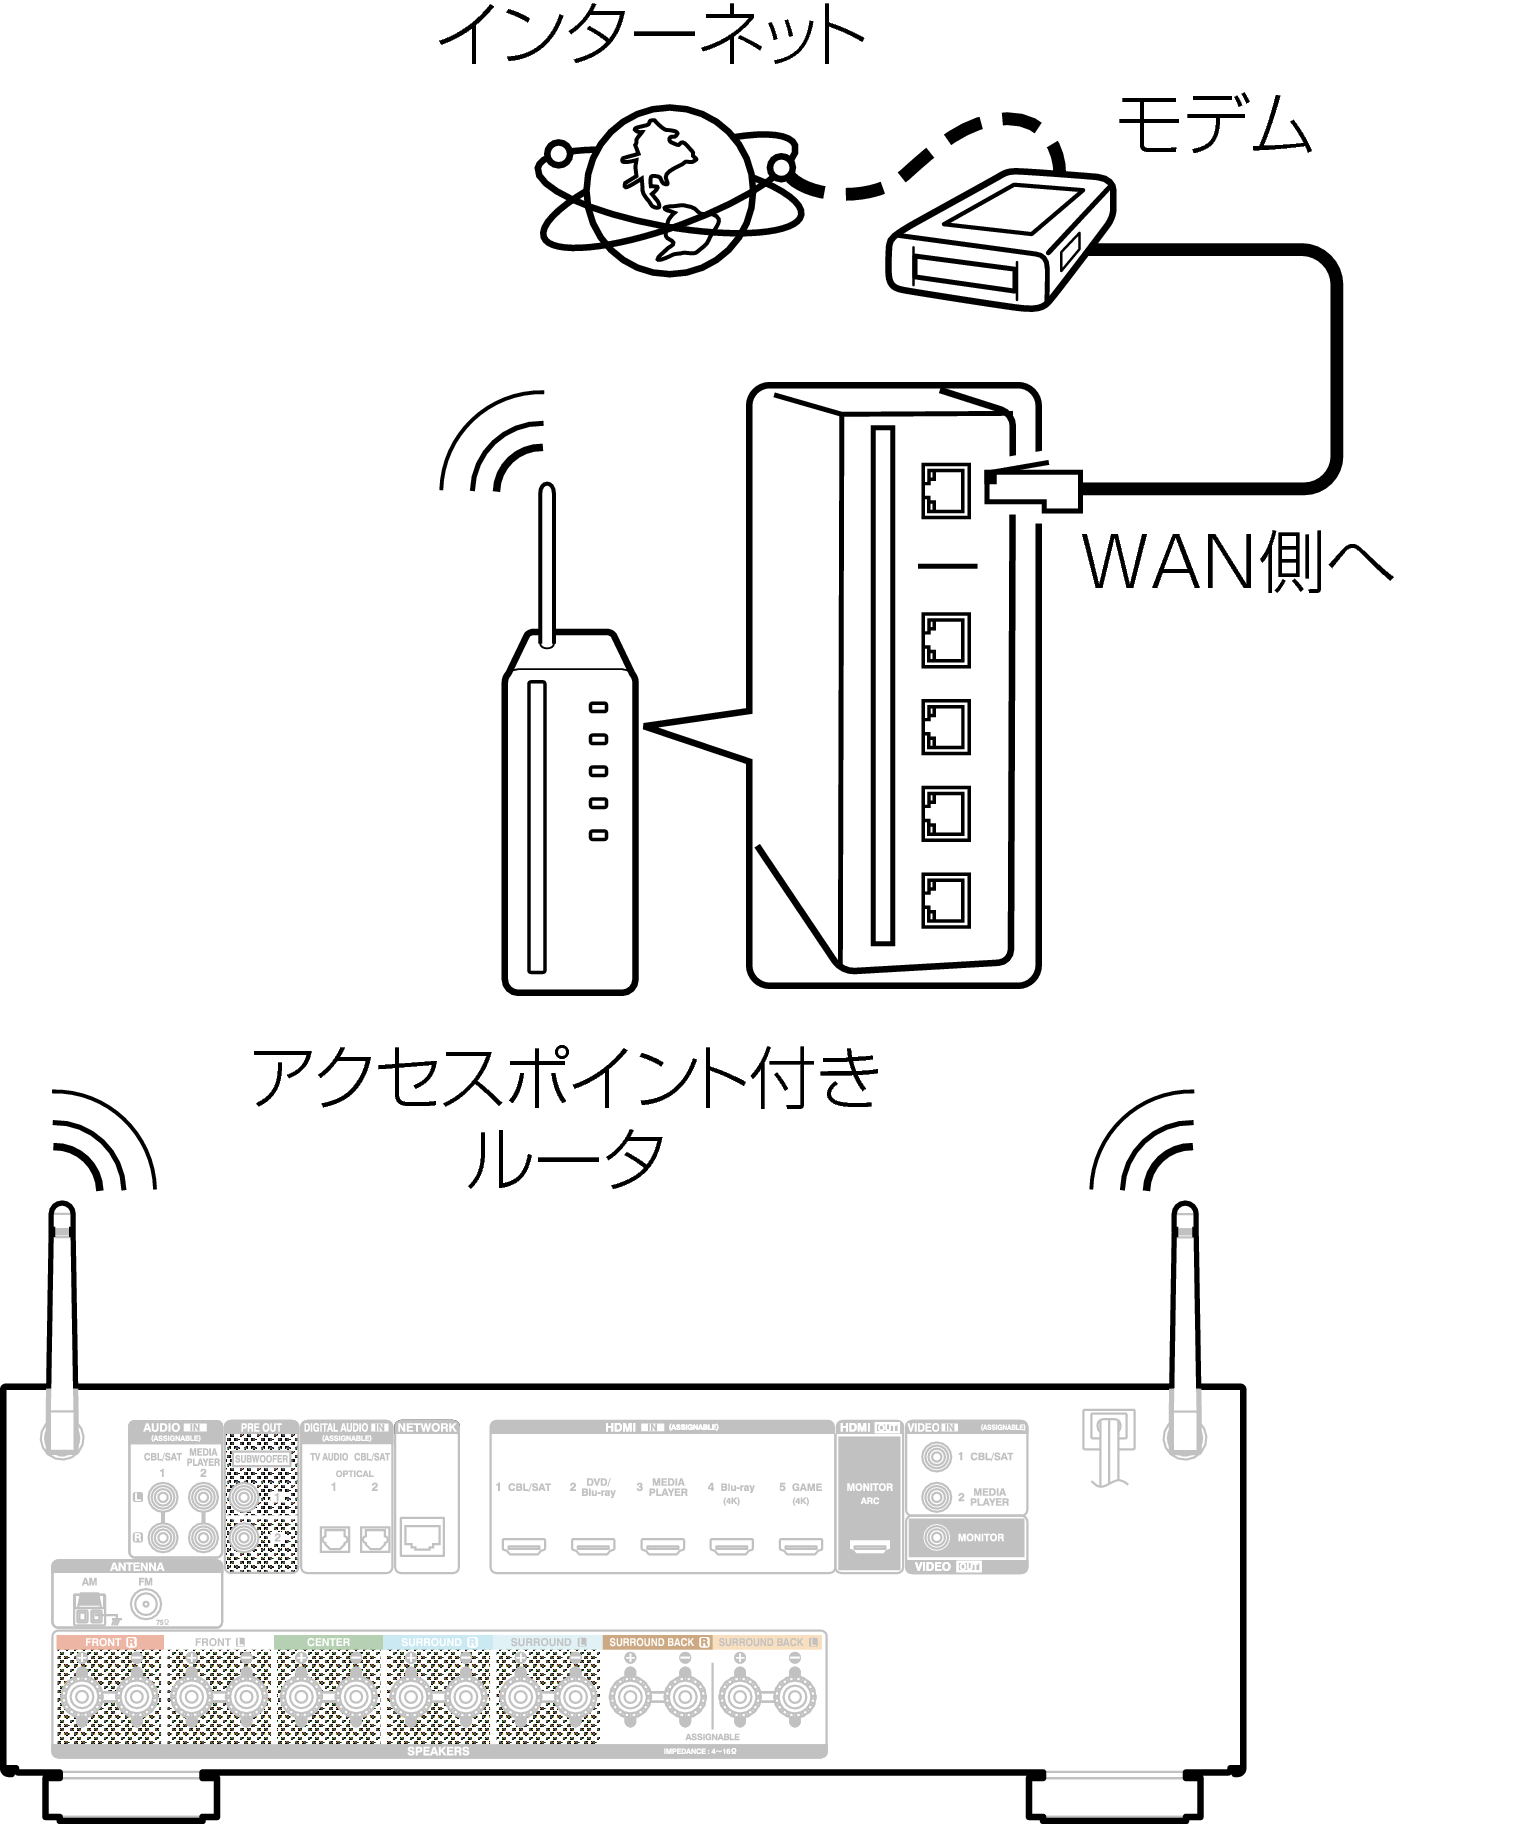 Conne Wireless AVRX1100WJP